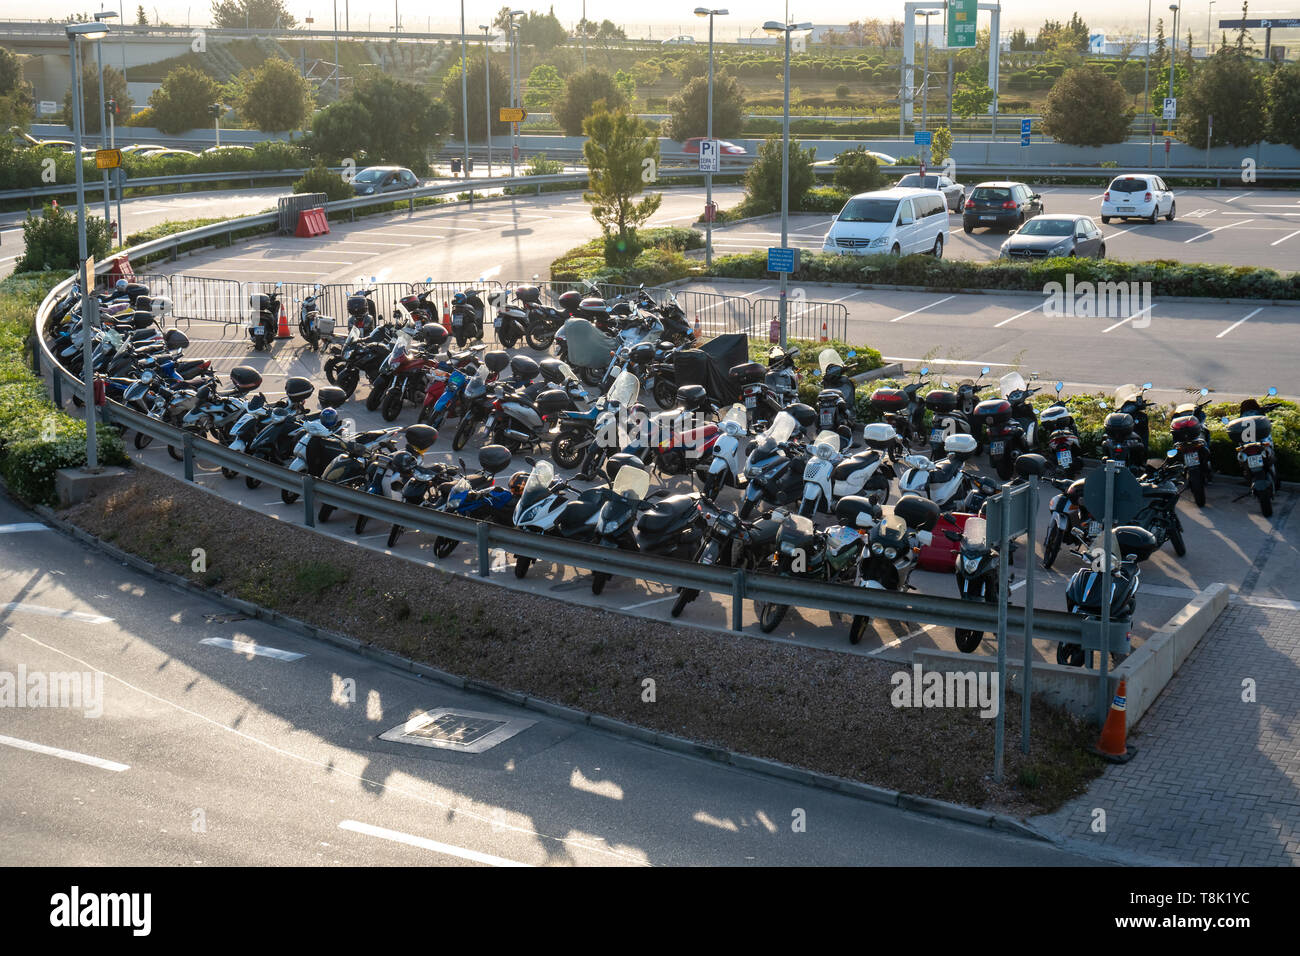 Athènes, Grèce - 27.04.2019 : beaucoup de motos et voitures à l'aéroport d' Athènes, parking gratuit Photo Stock - Alamy